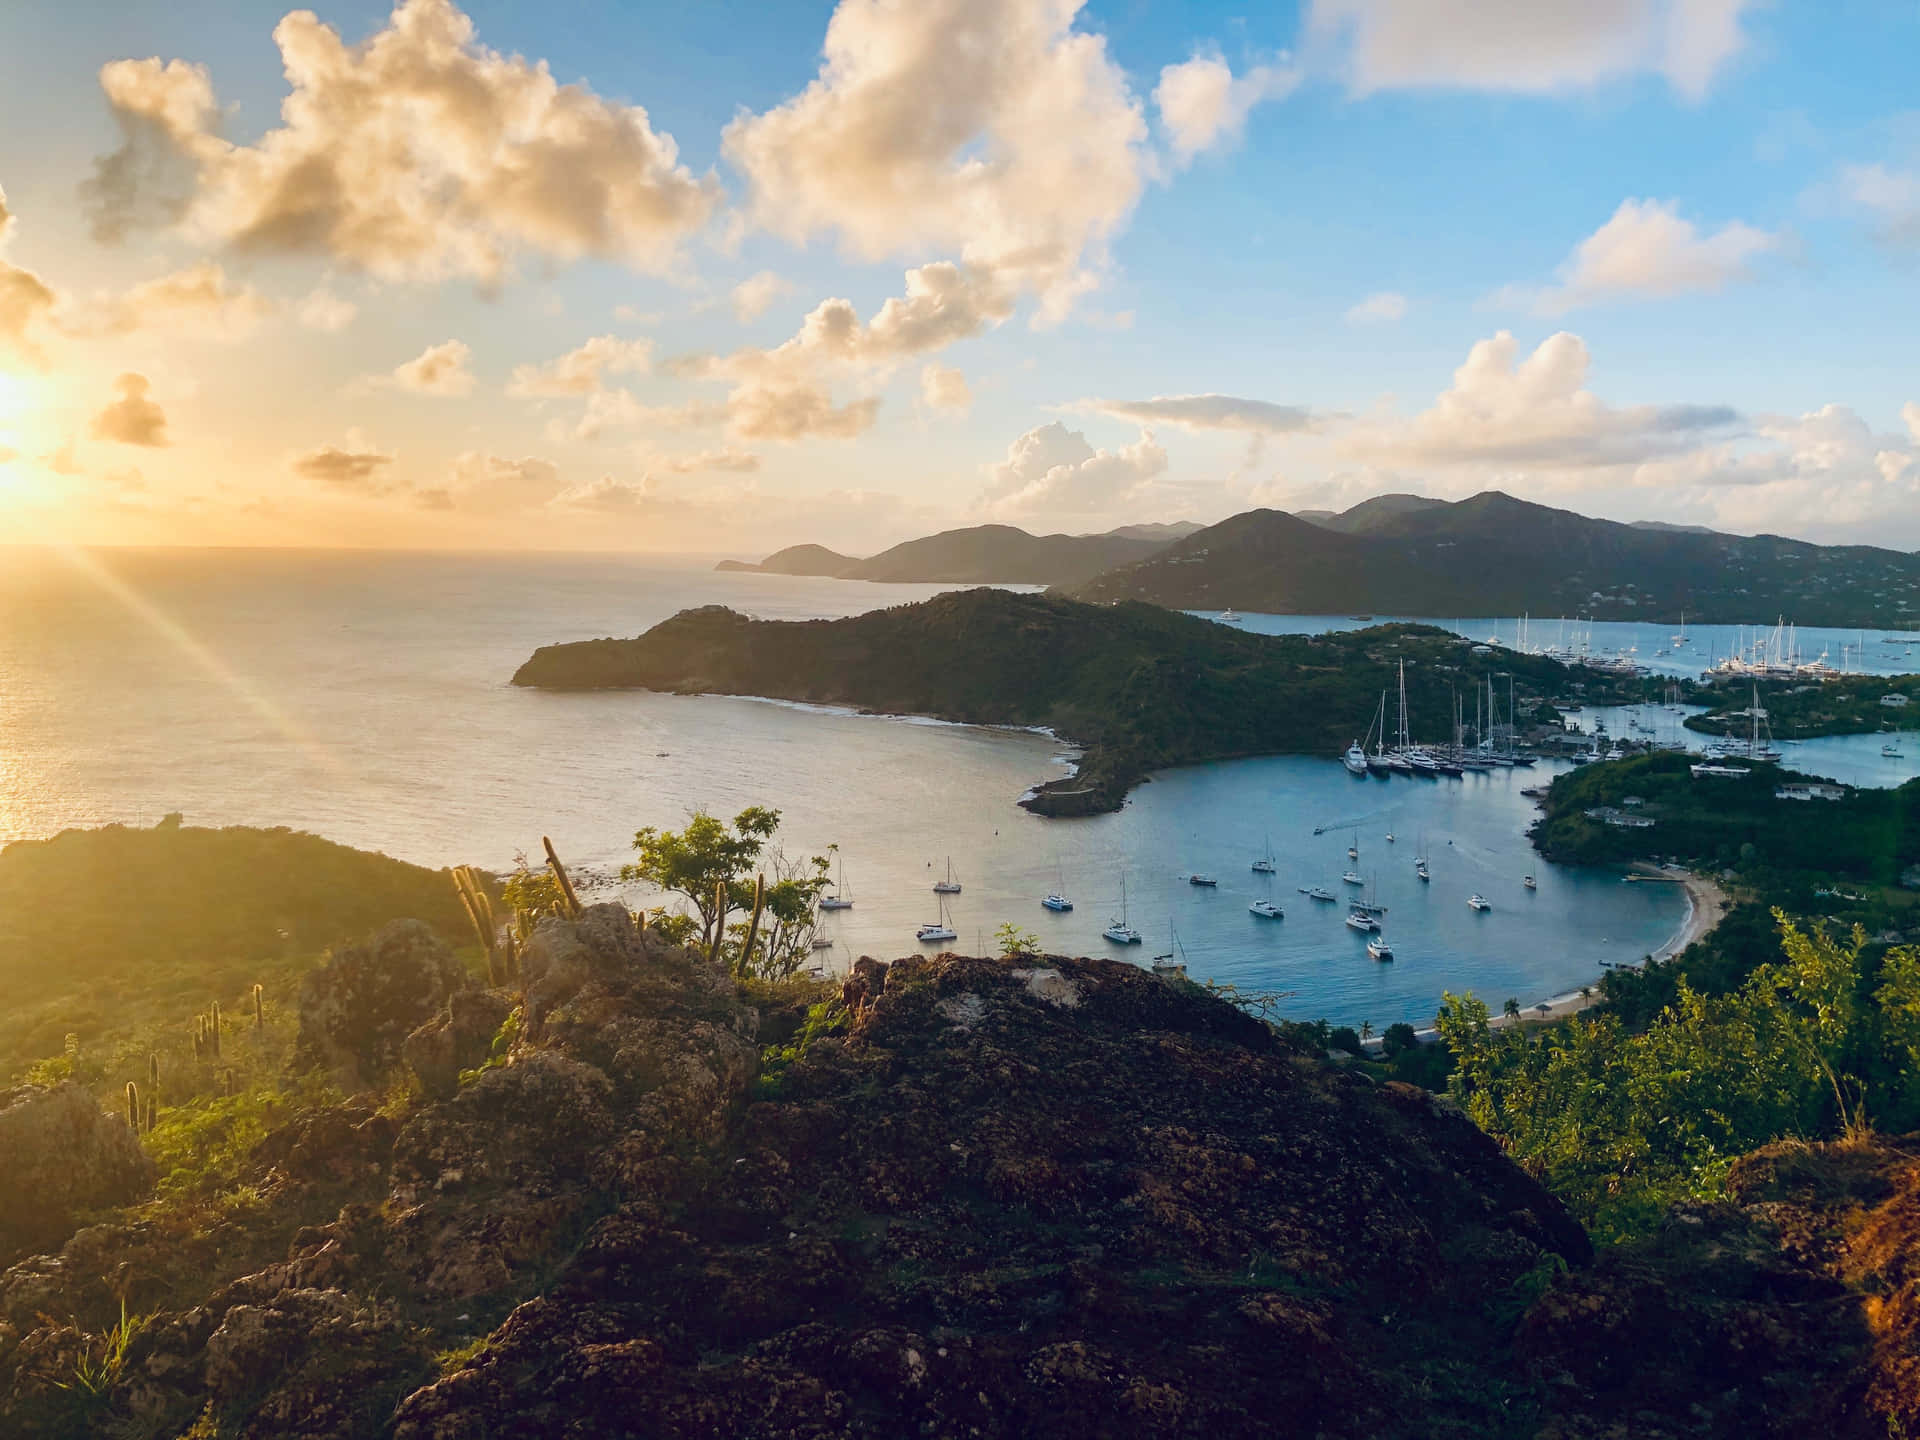 A breathtaking view of a Caribbean beach paradise